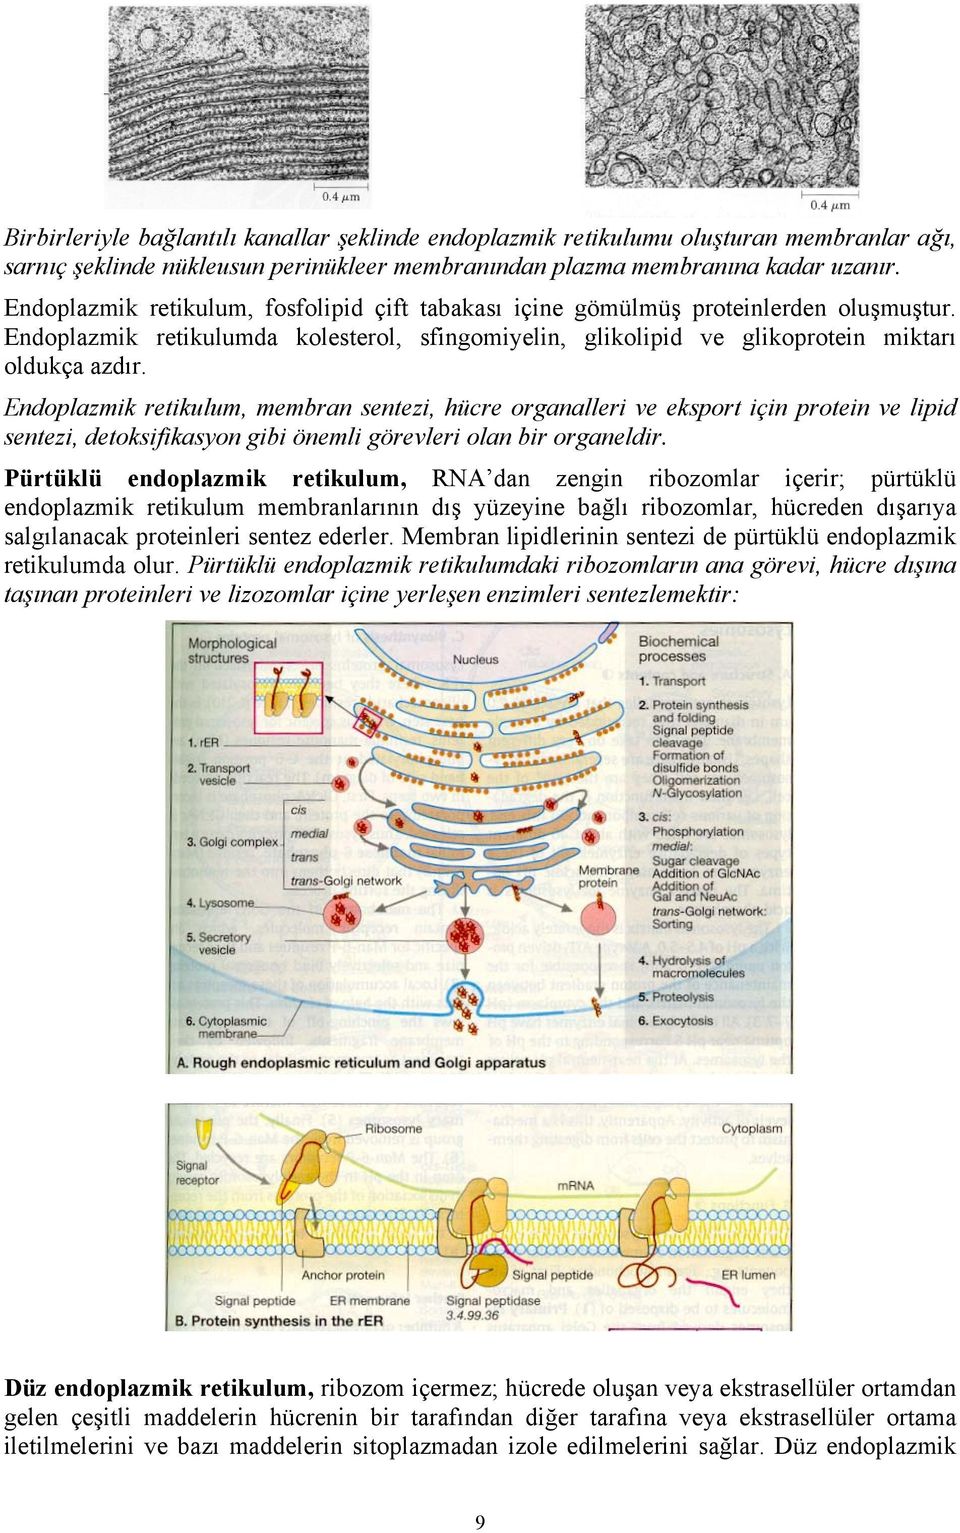 Endoplazmik retikulum, membran sentezi, hücre organalleri ve eksport için protein ve lipid sentezi, detoksifikasyon gibi önemli görevleri olan bir organeldir.